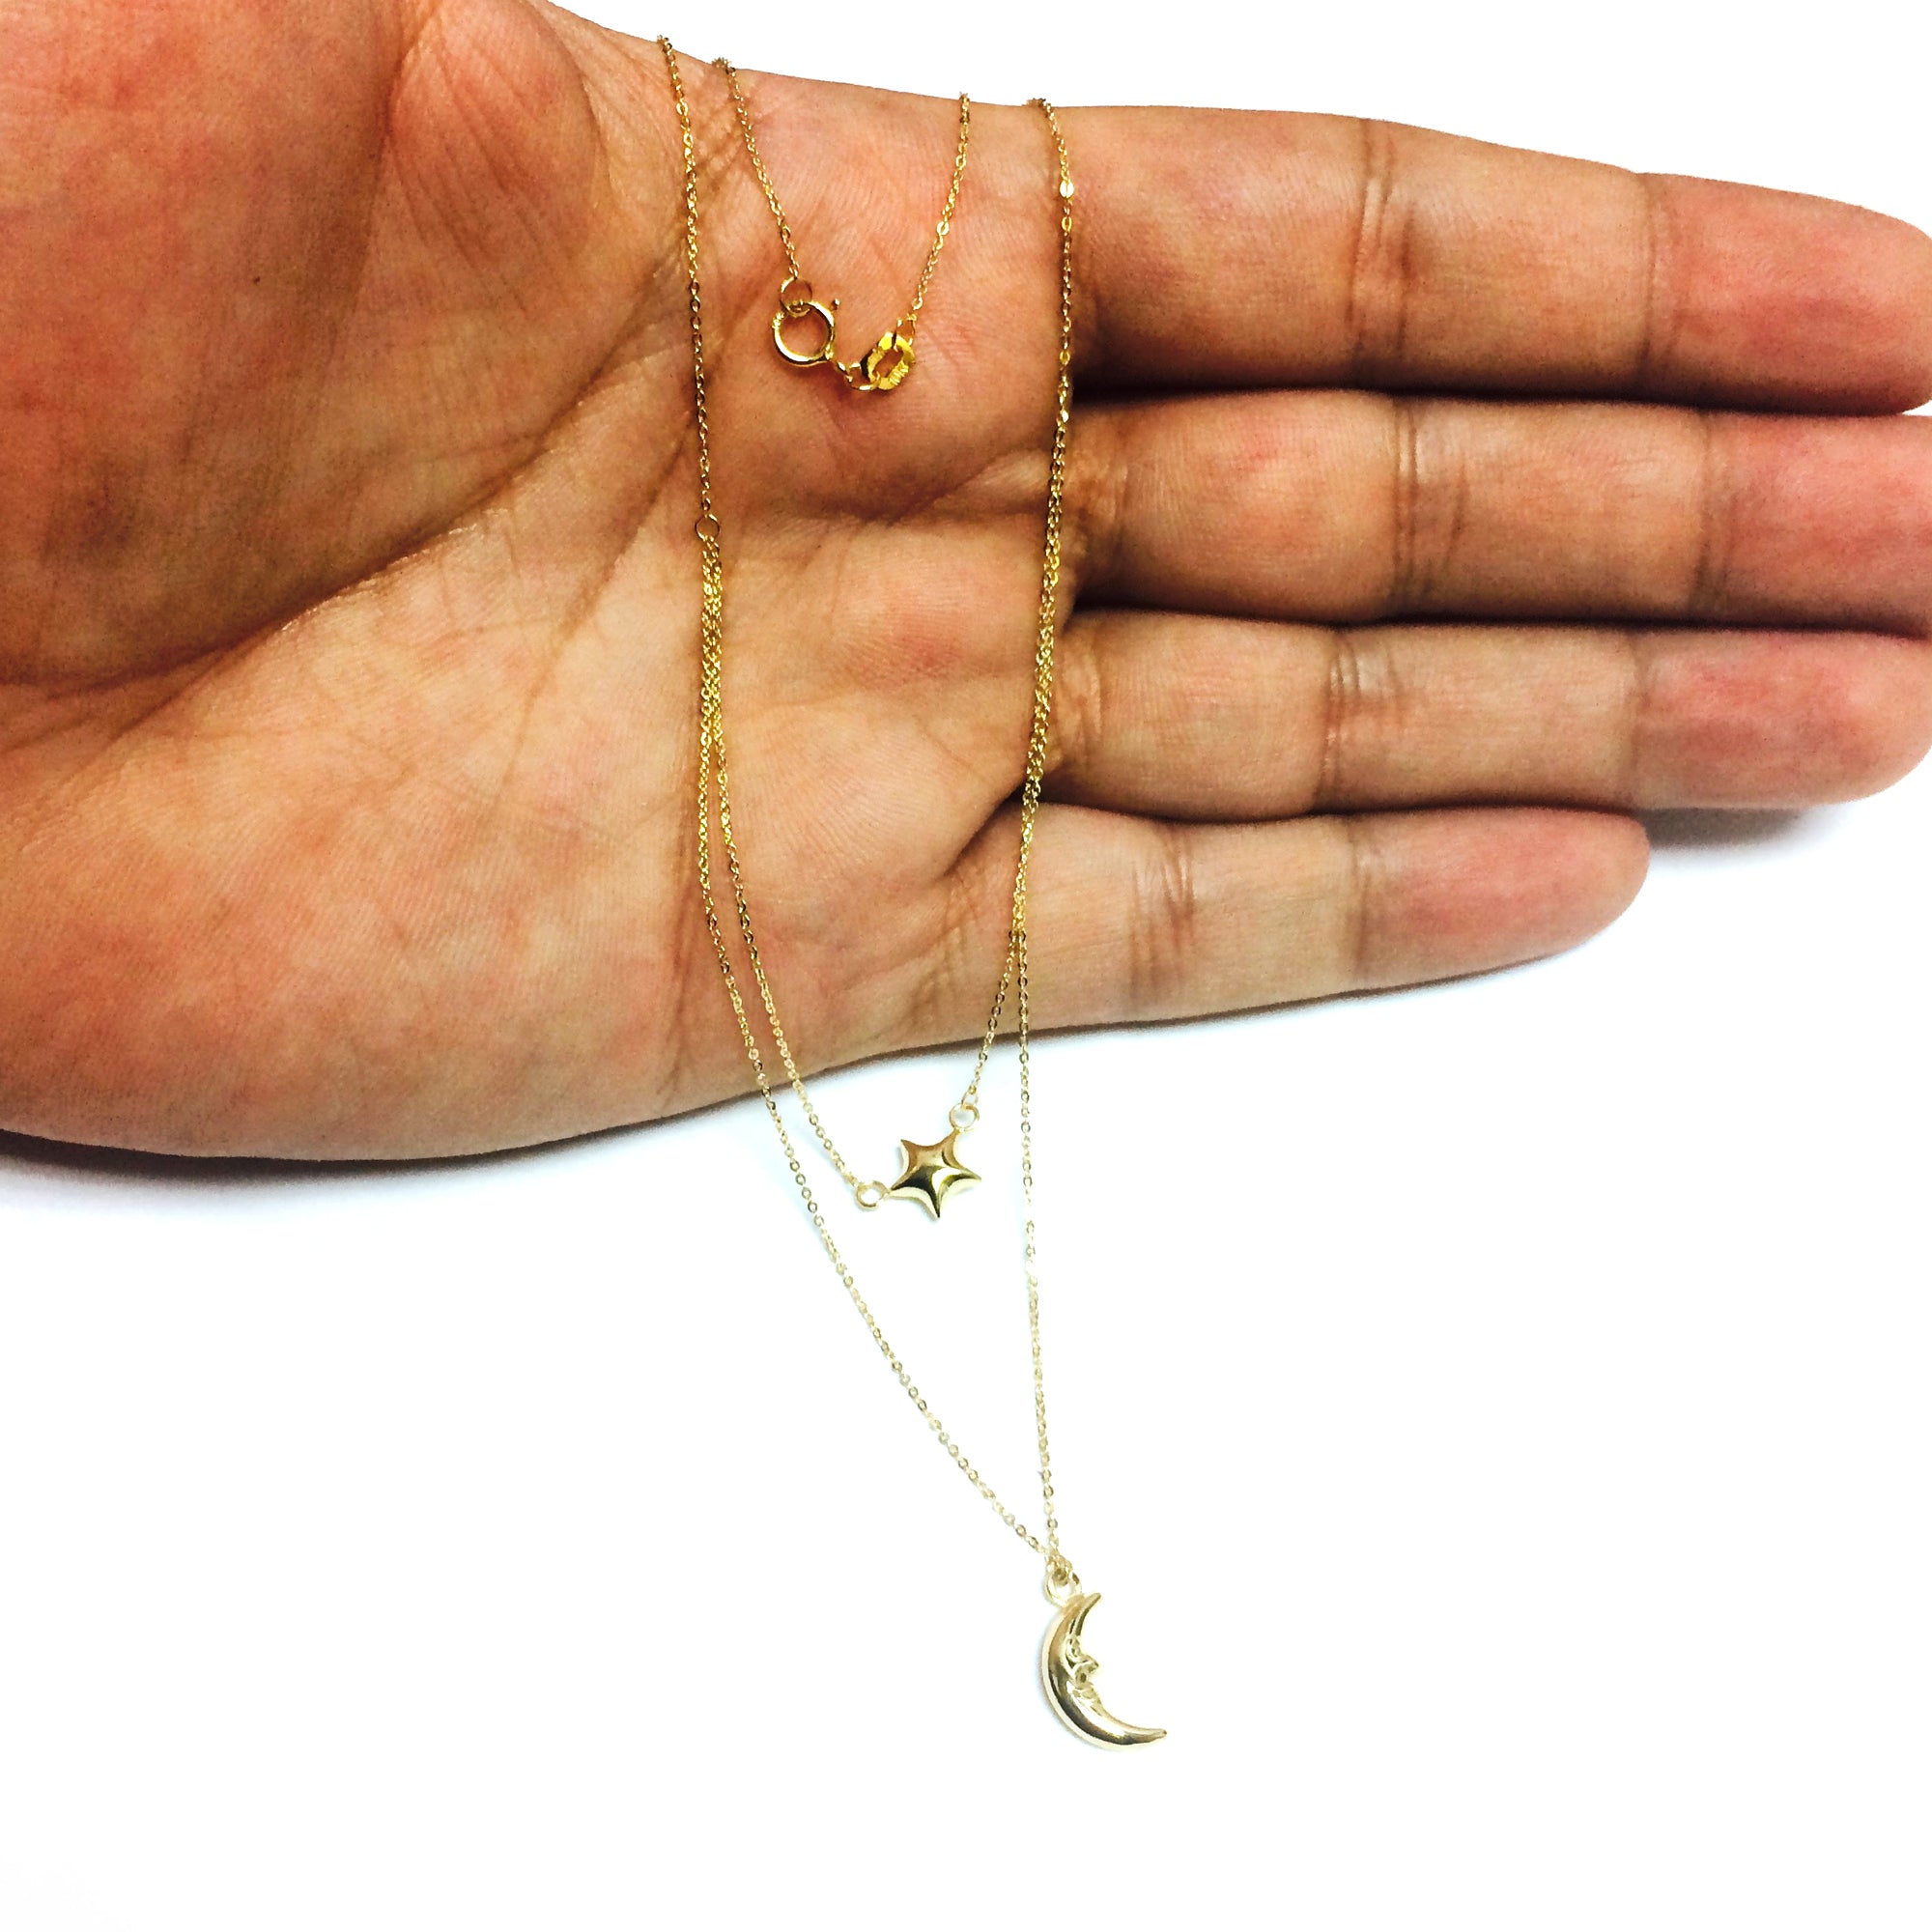 10K gult guld mån- och stjärnskiktshängande halsband, 17" fina designersmycken för män och kvinnor